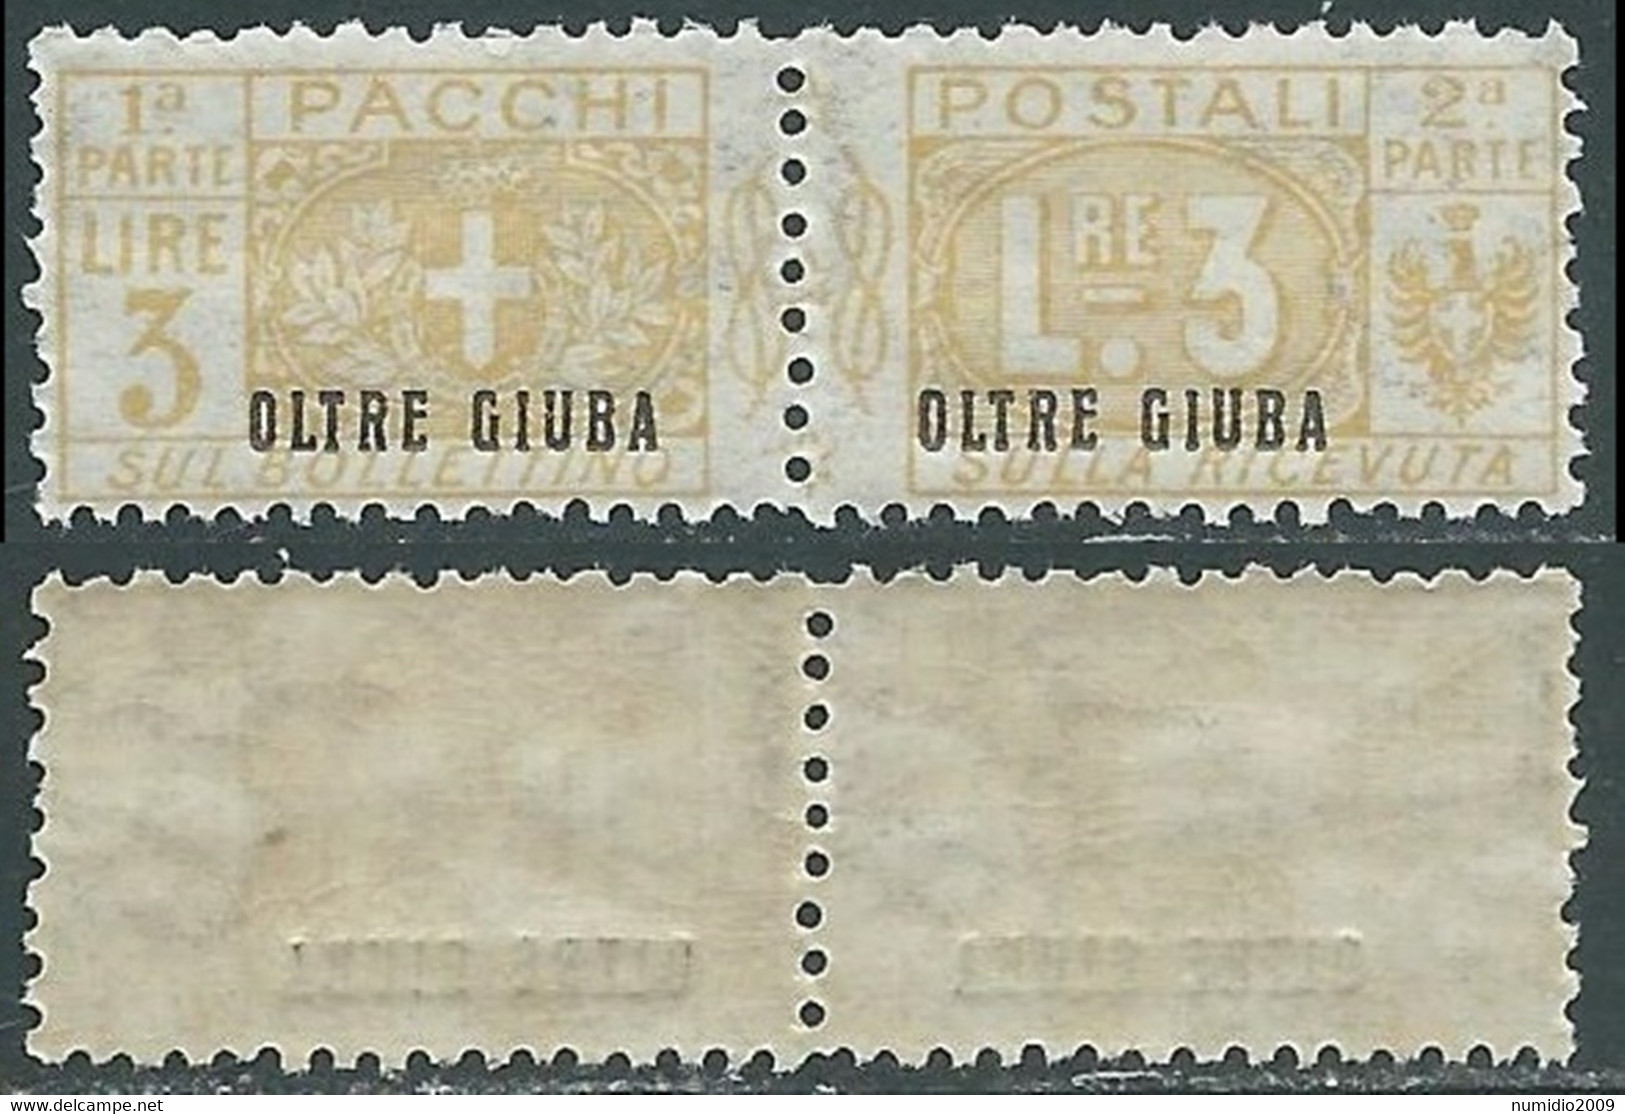 1925 OLTRE GIUBA PACCHI POSTALI 3 LIRE MNH ** - E200 - Oltre Giuba